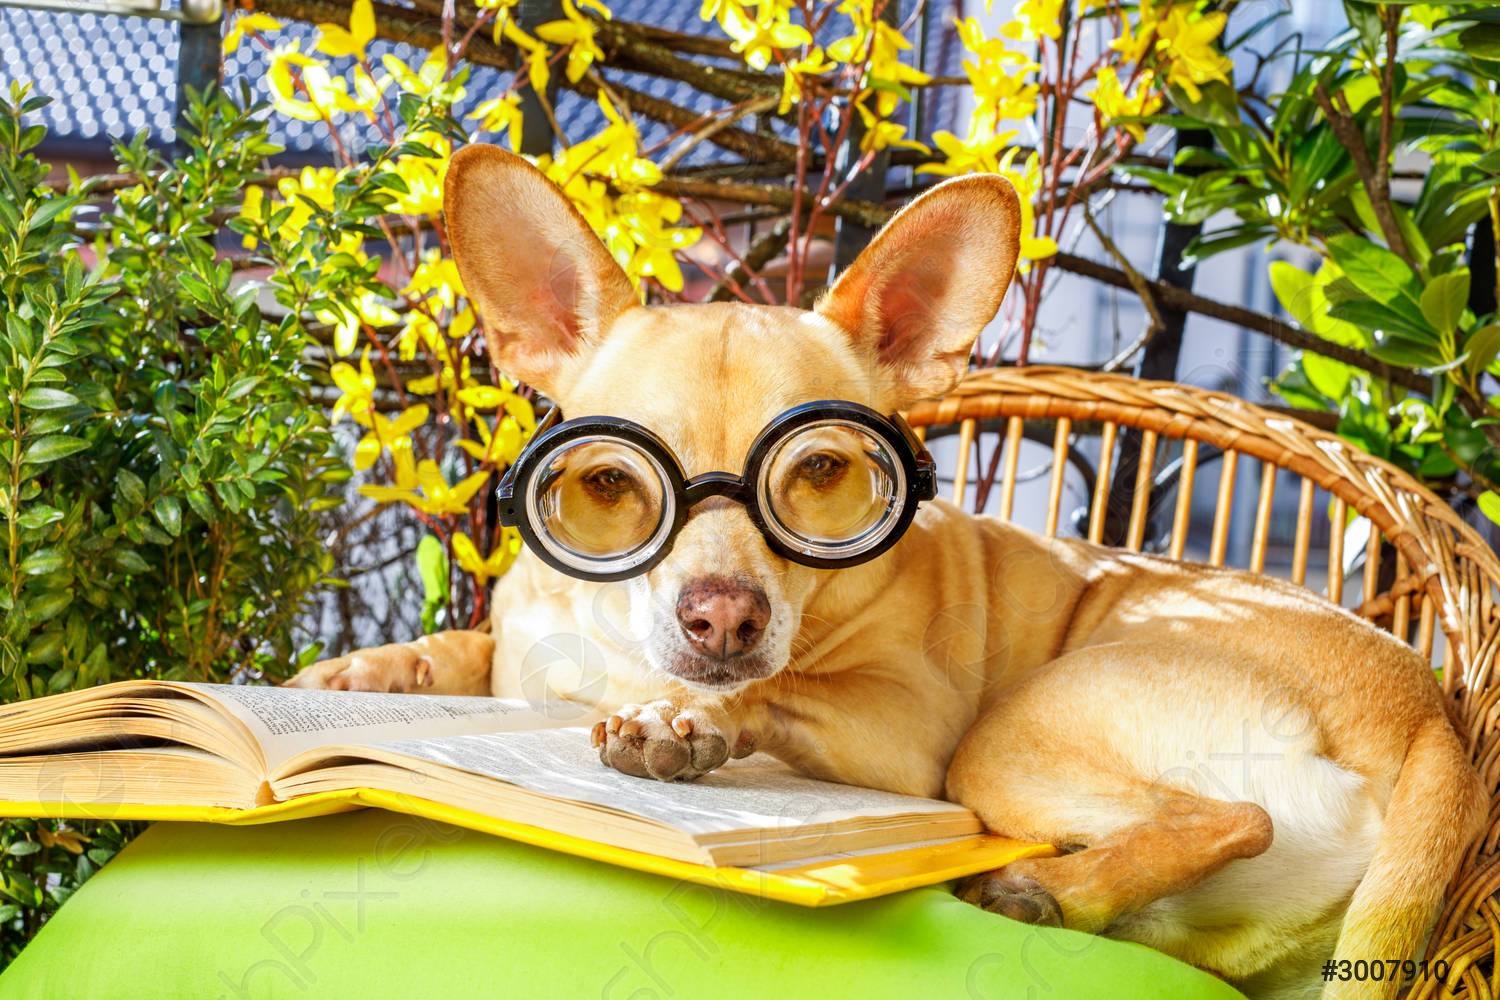 Hund liest ein Buch, umgeben von grünen Pflanzen